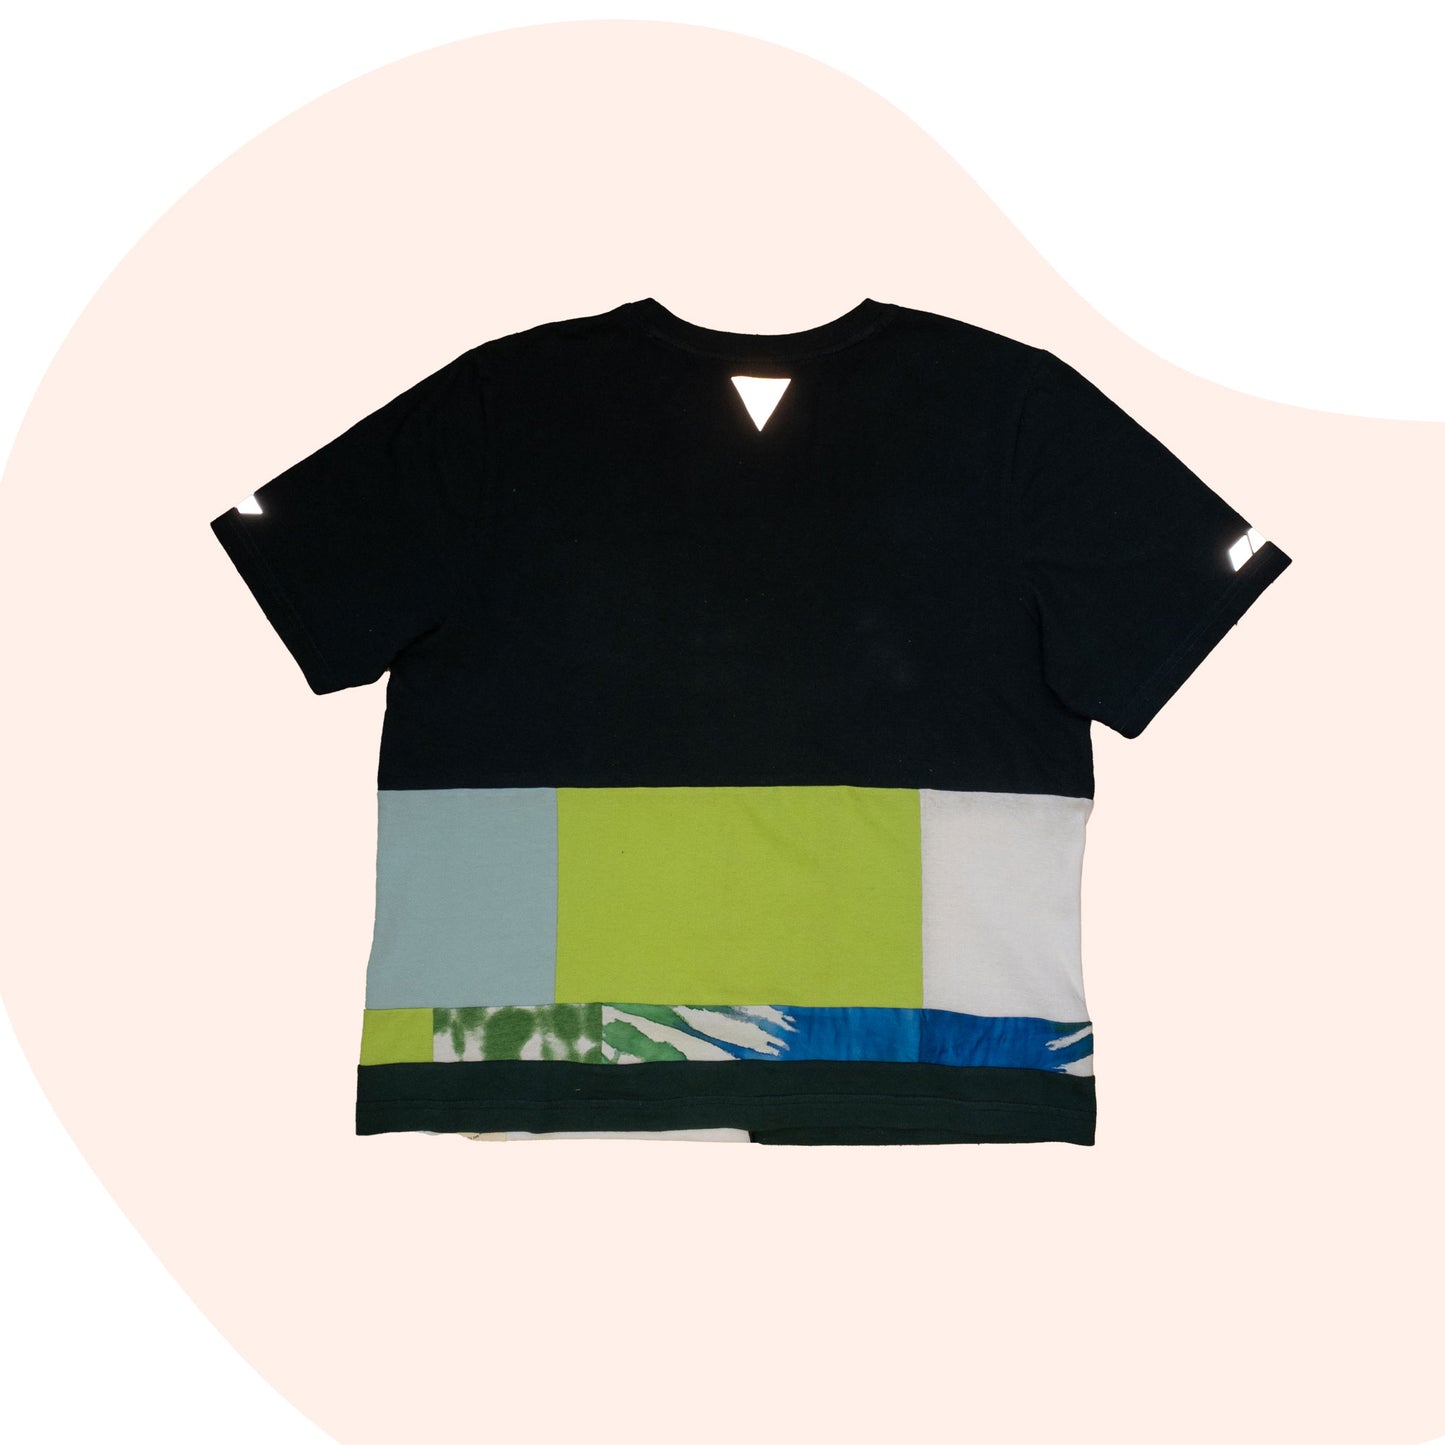 Patchwork Shirt #13 - Green / Blue - Size L